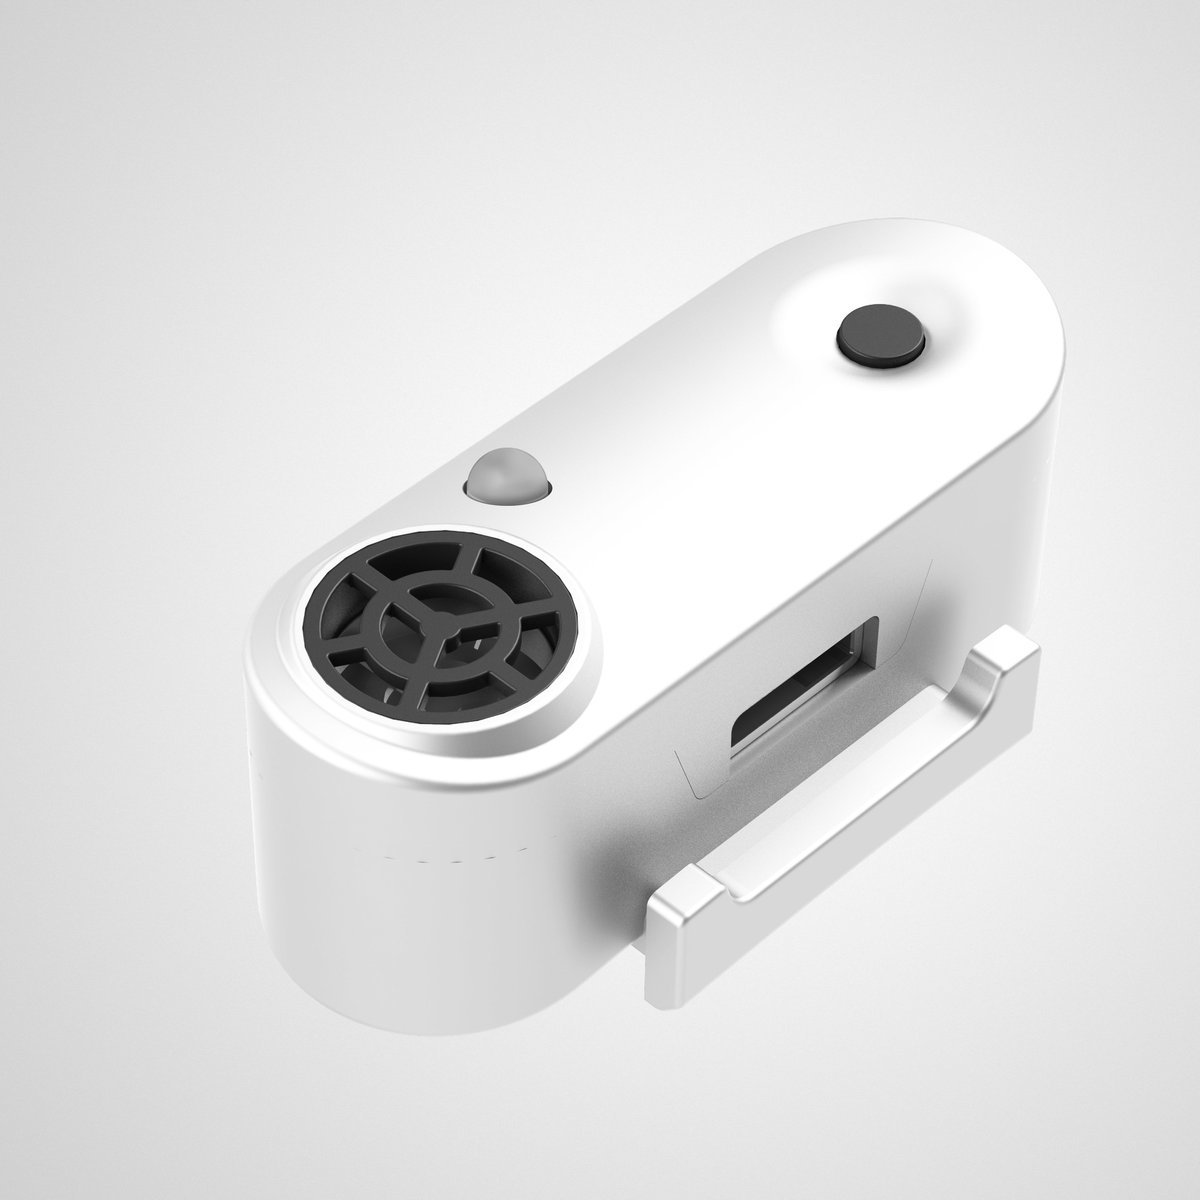 Tickless Mini Cat USB dispozitiv repelent cu ultrasunete pentru purici și căpușe pentru pisici - zoom